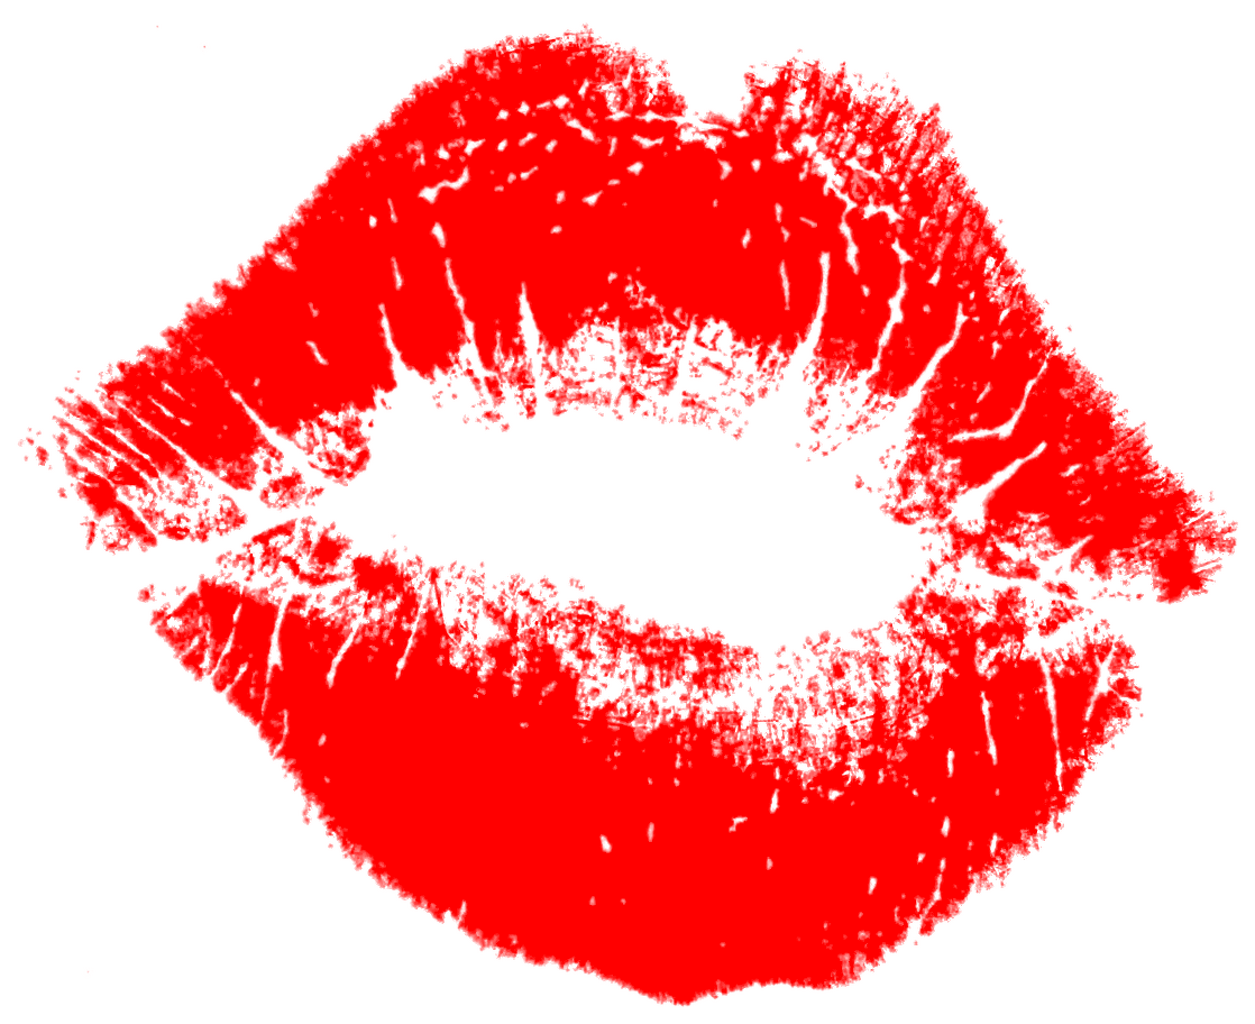 キス、赤い唇